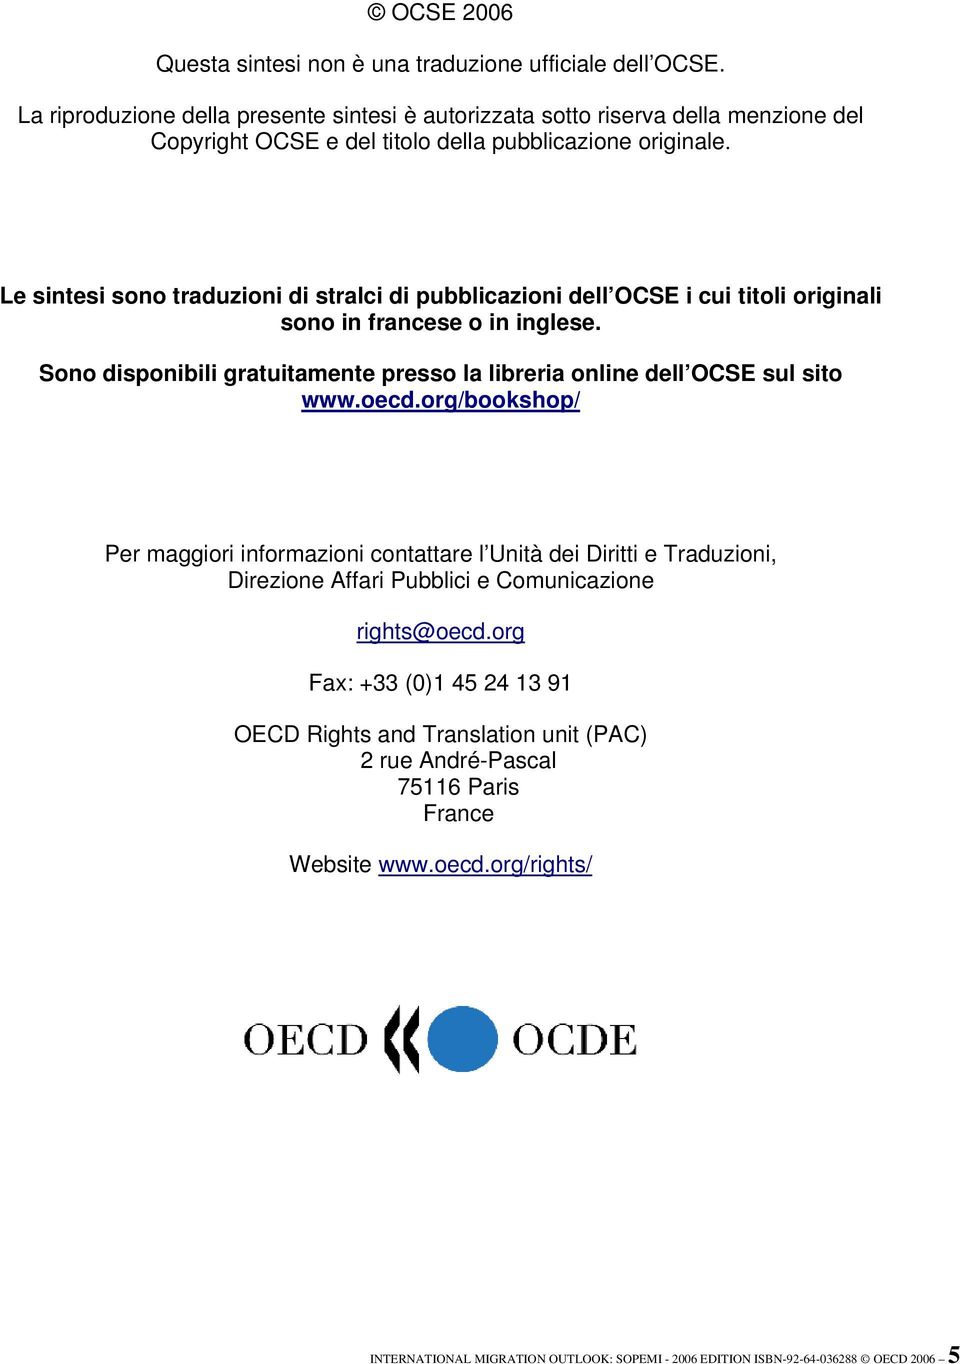 Le sintesi sono traduzioni di stralci di pubblicazioni dell OCSE i cui titoli originali sono in francese o in inglese.